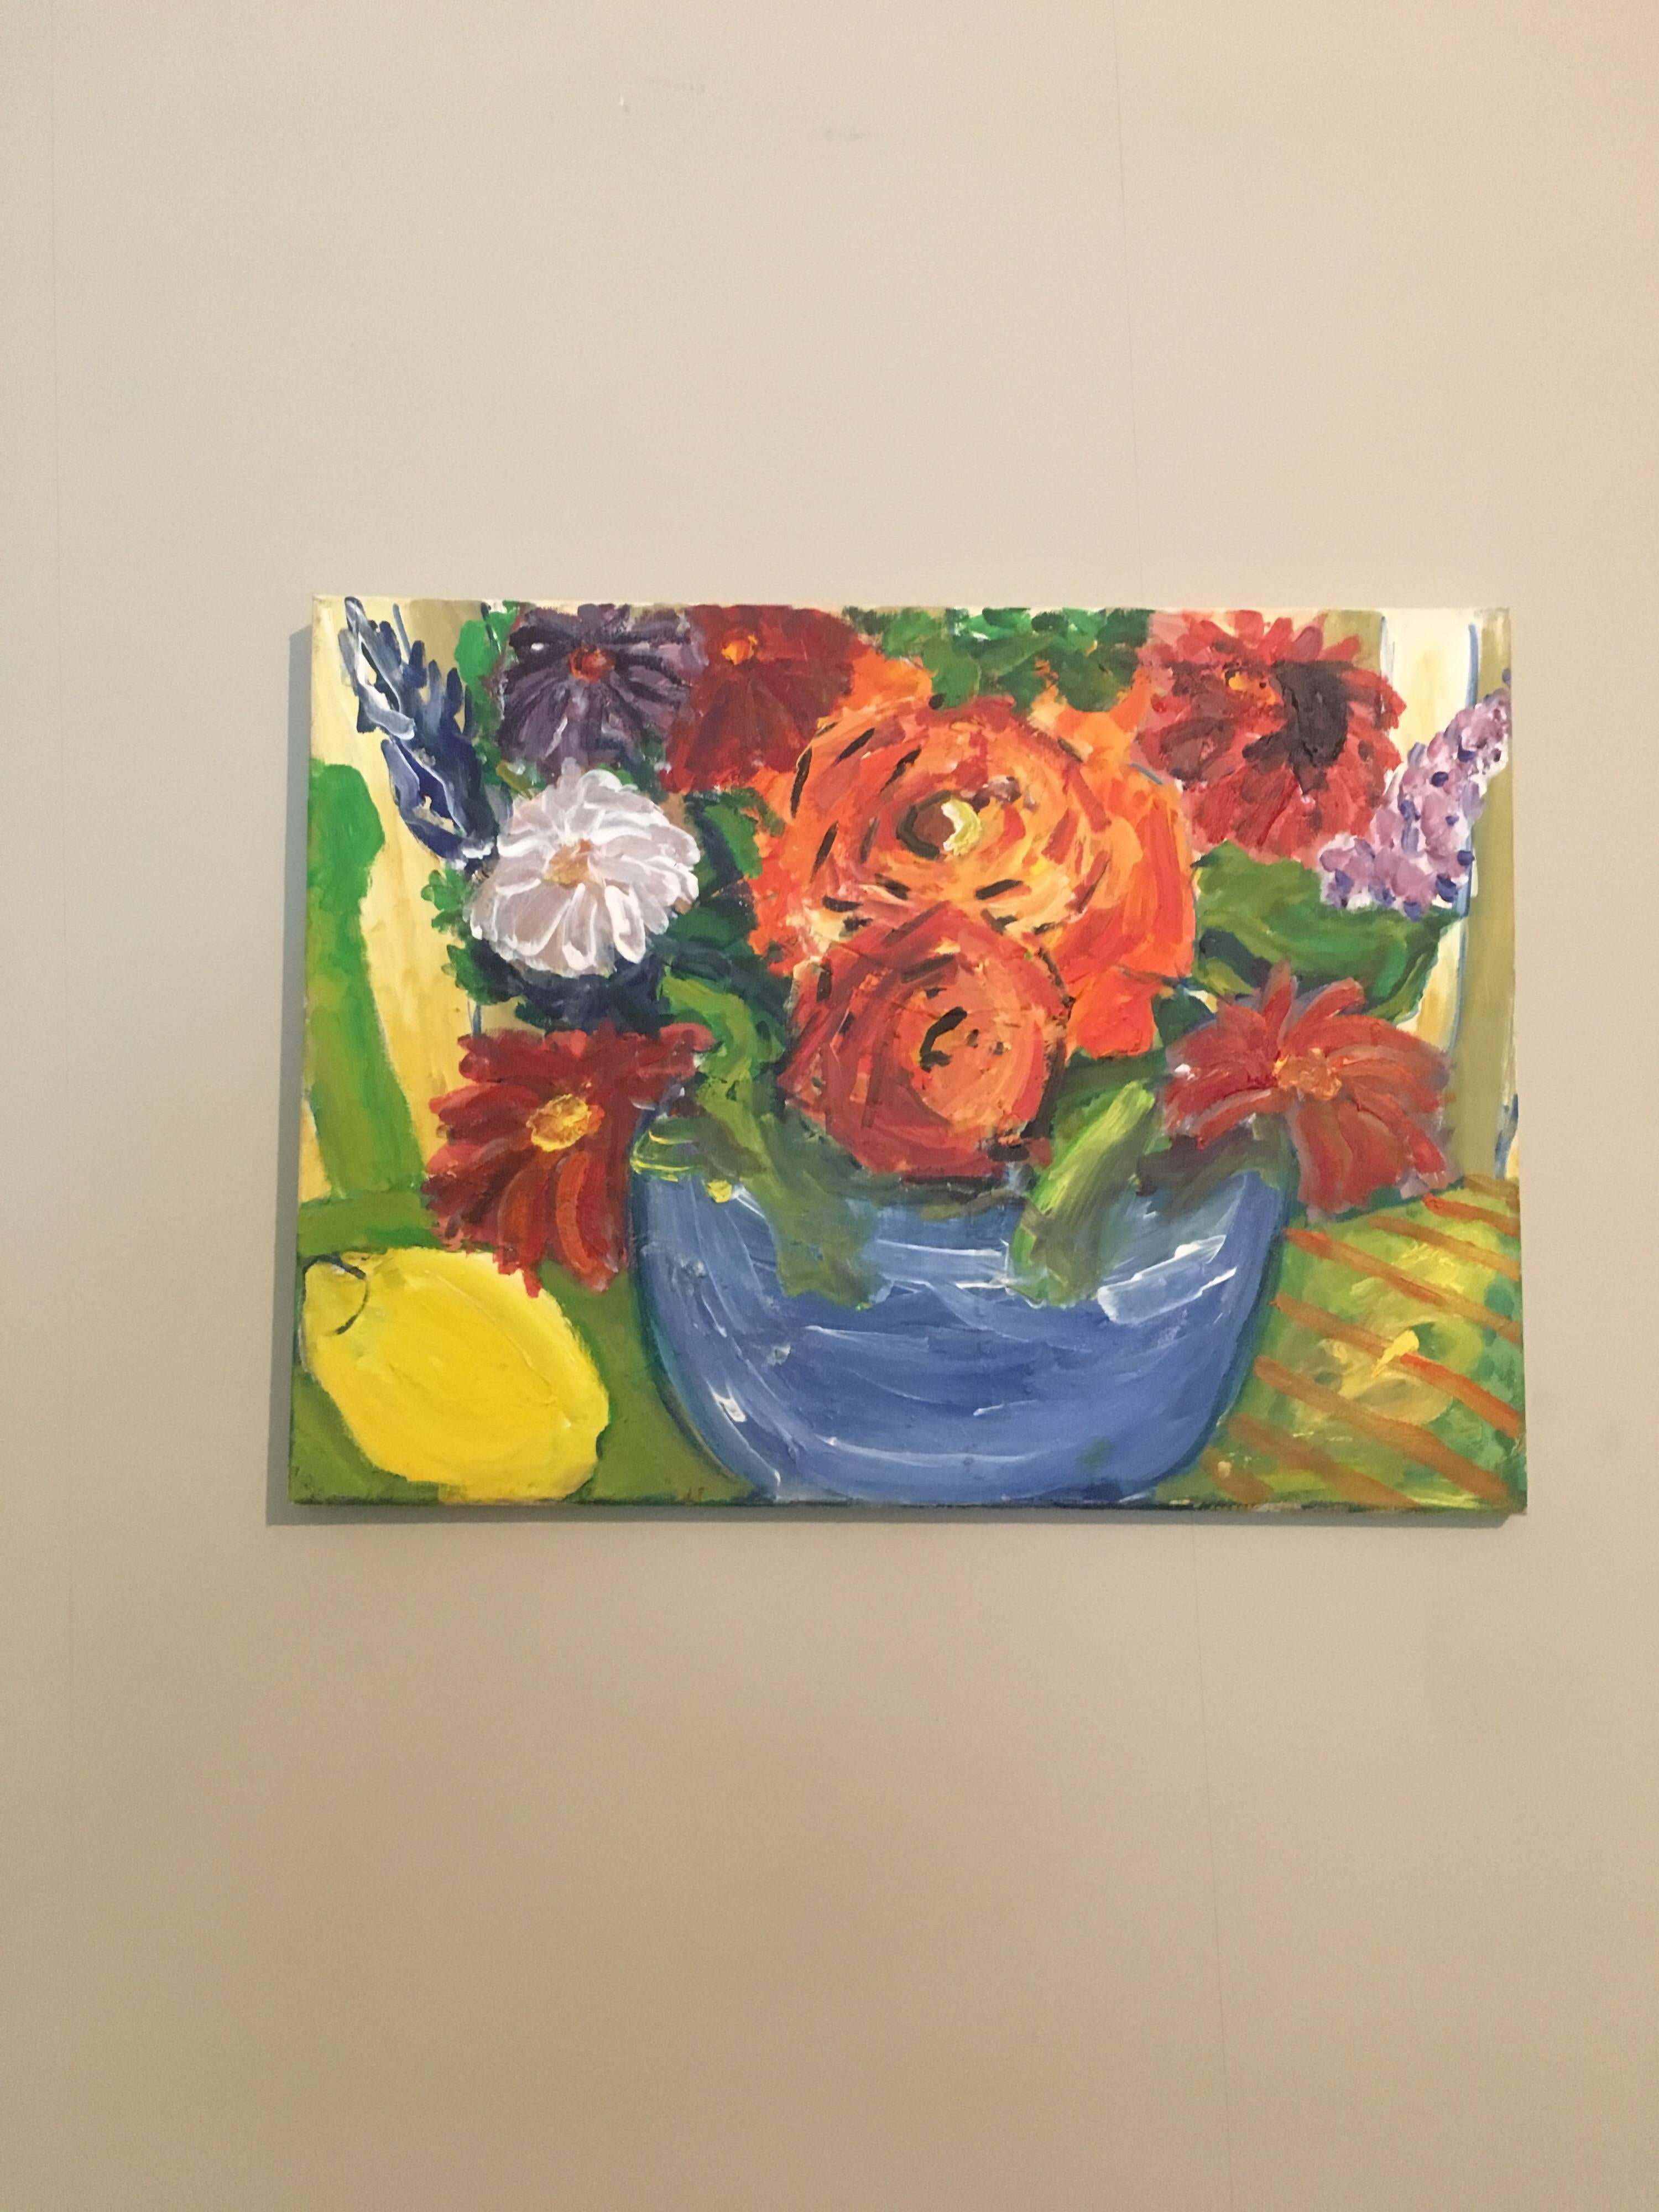 Blumen zum Ausschließen, leuchtende Farben, britischer Künstler (Impressionismus), Painting, von Pamela Cawley